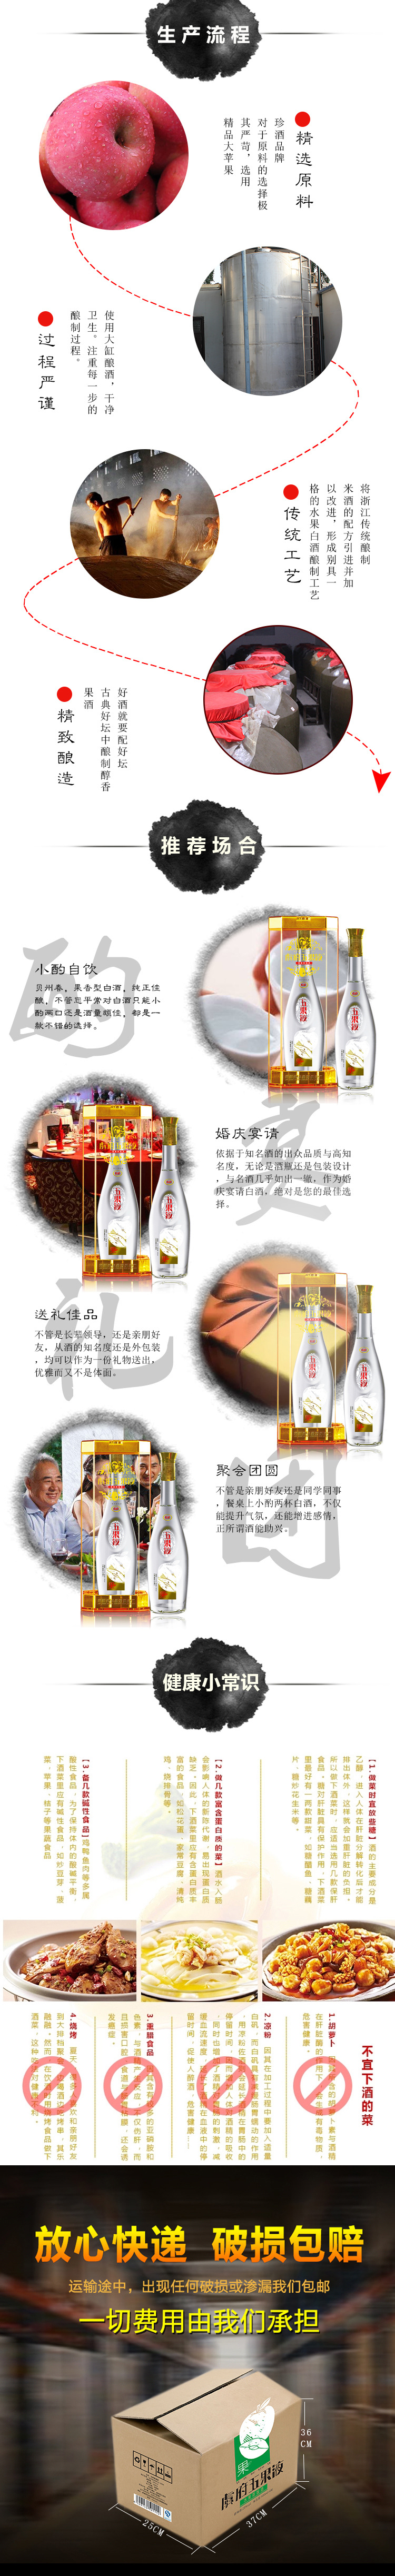 新疆天然水果酒 虞府万果液 苹果蒸馏酒厂家直销500ML示例图2